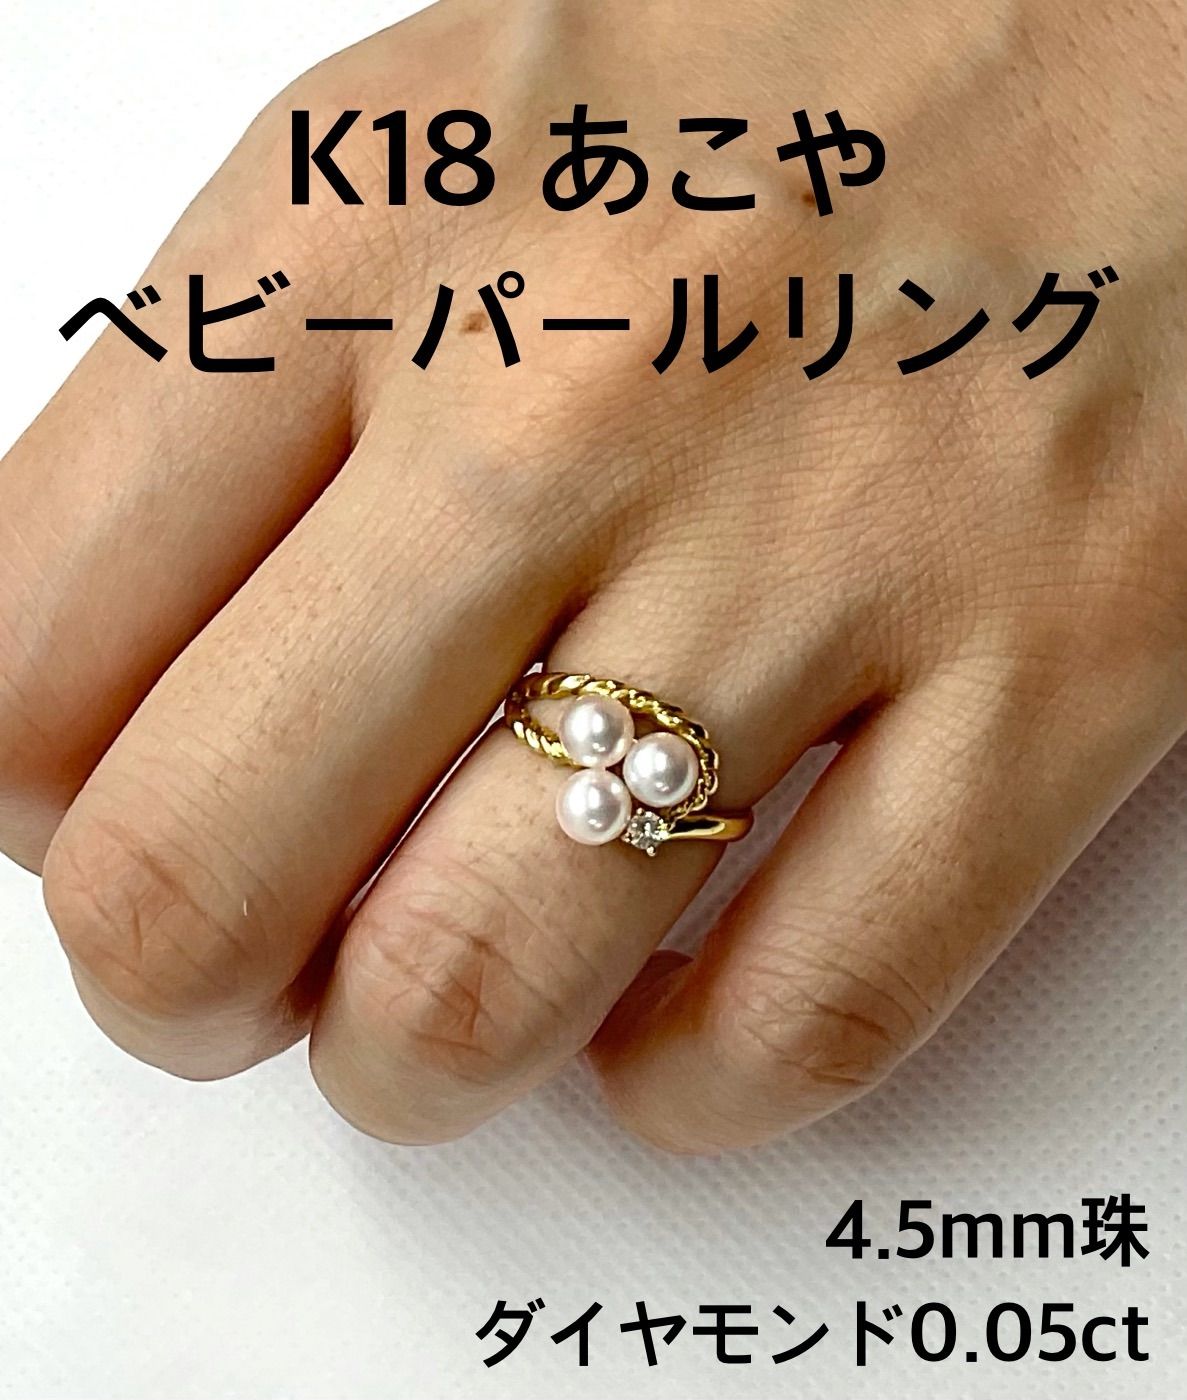 日本代理店正規品 K18イエローゴールド あこや真珠リング 9.4mm サイズ